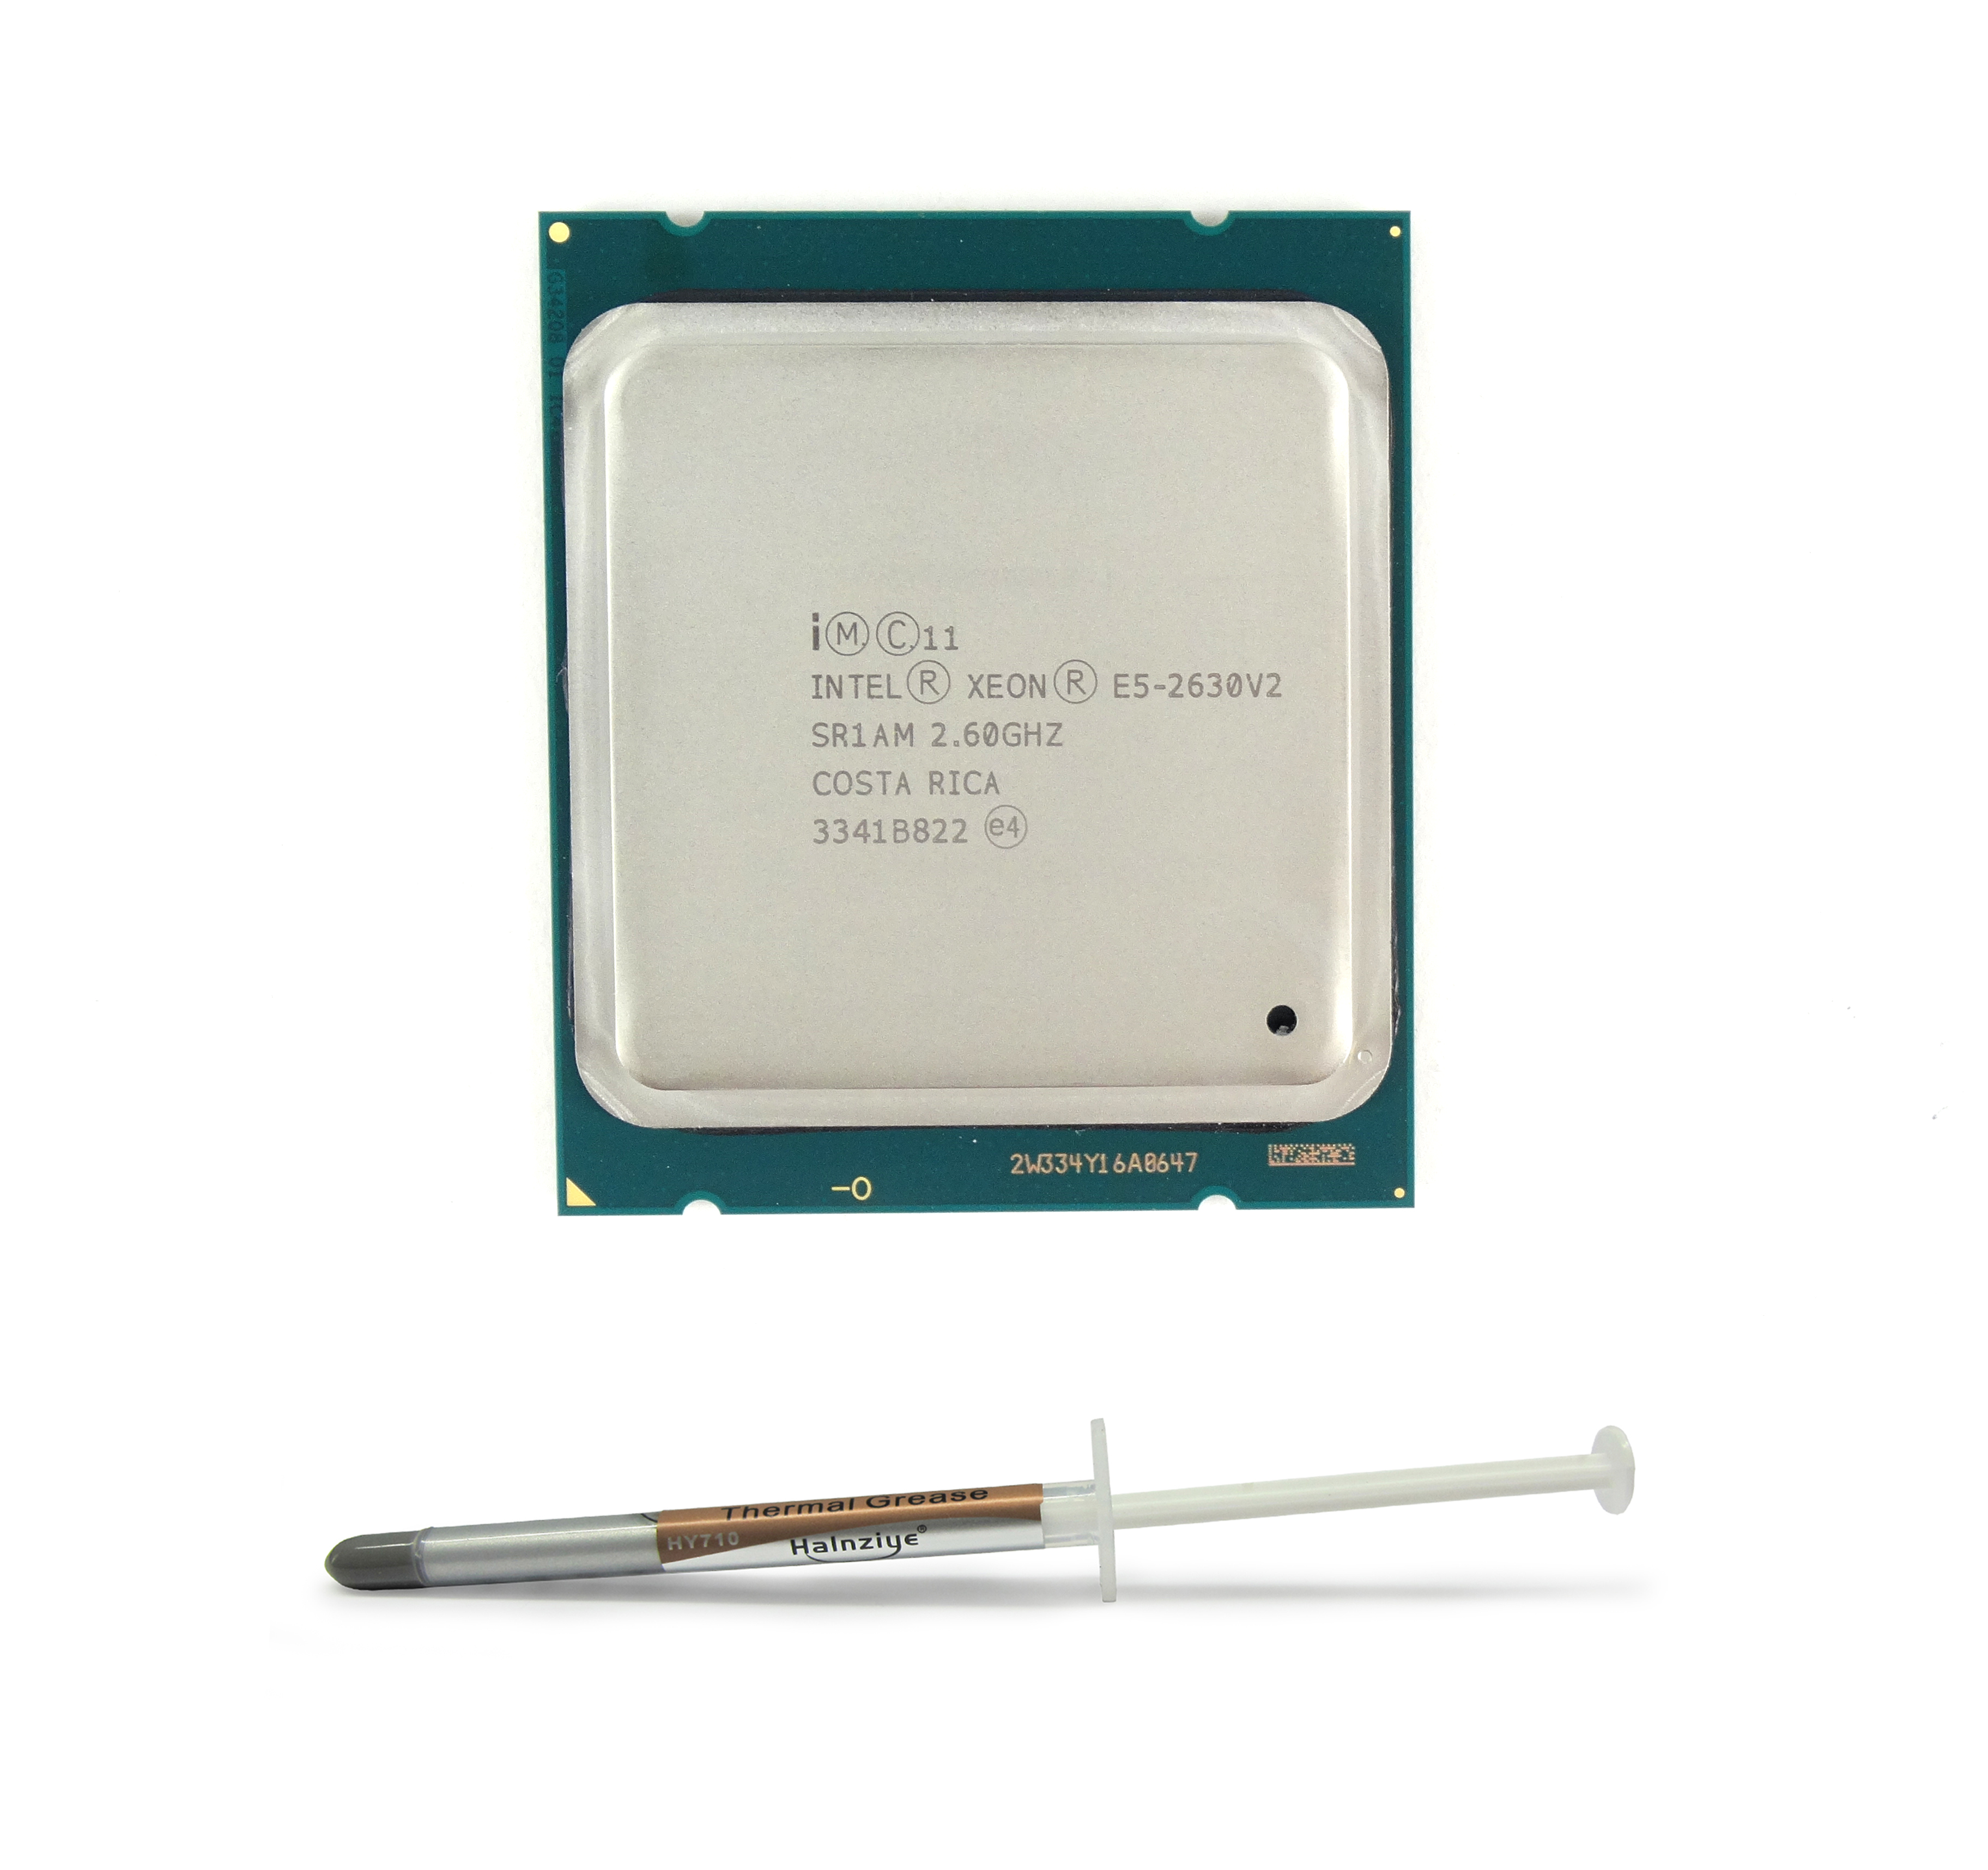 Intel Xeon E5-2630V2 2.6GHz 6-Core 15MB LGA2011 Processor (SR1AM)